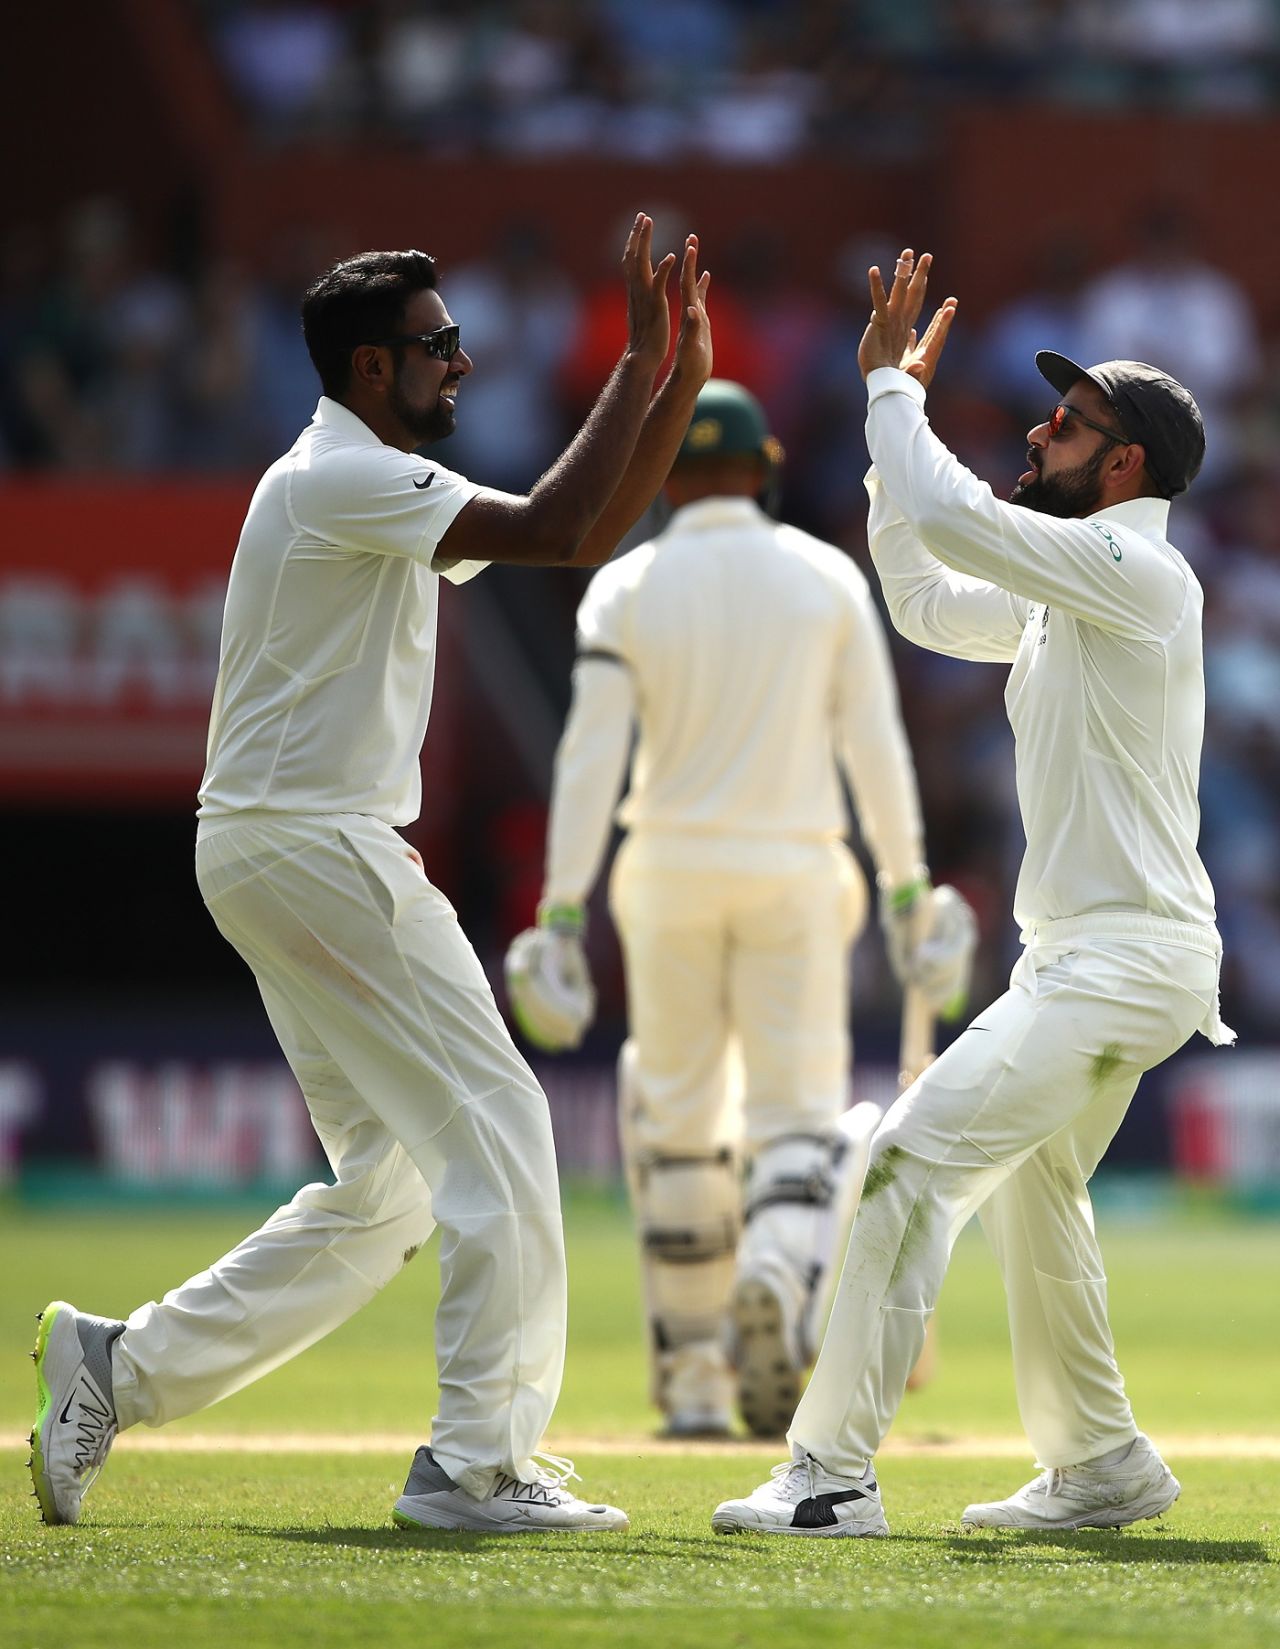 R Ashwin high fives Virat Kohli, Australia v India, 1st Test, Adelaide, 4th day, December 9, 2018